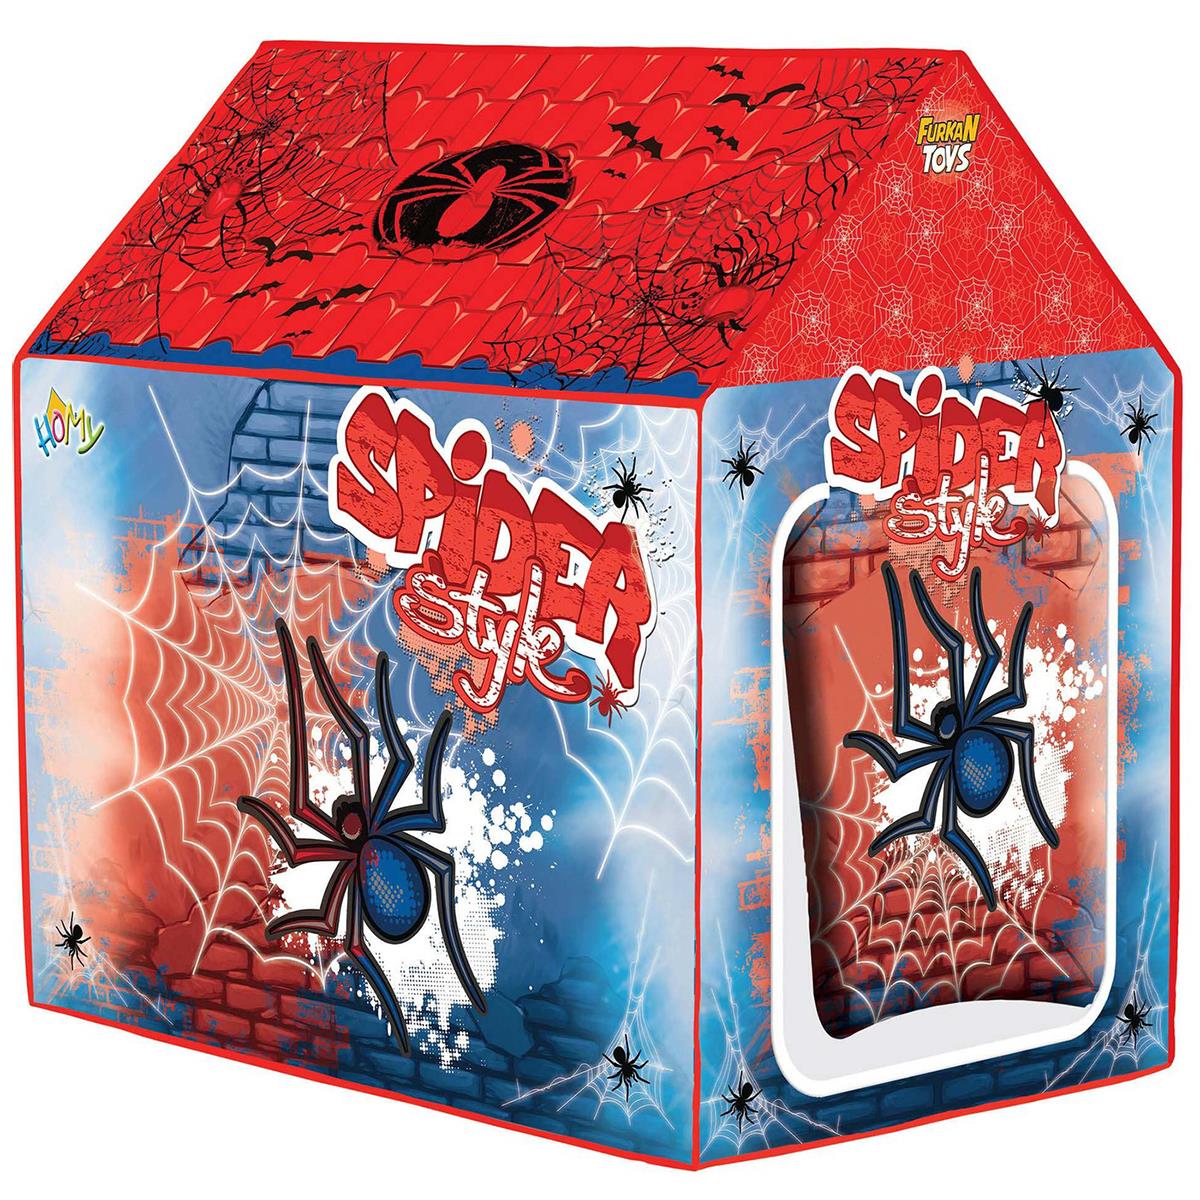 Furkan Toys Spider Oyun Evi 3+ Yaş